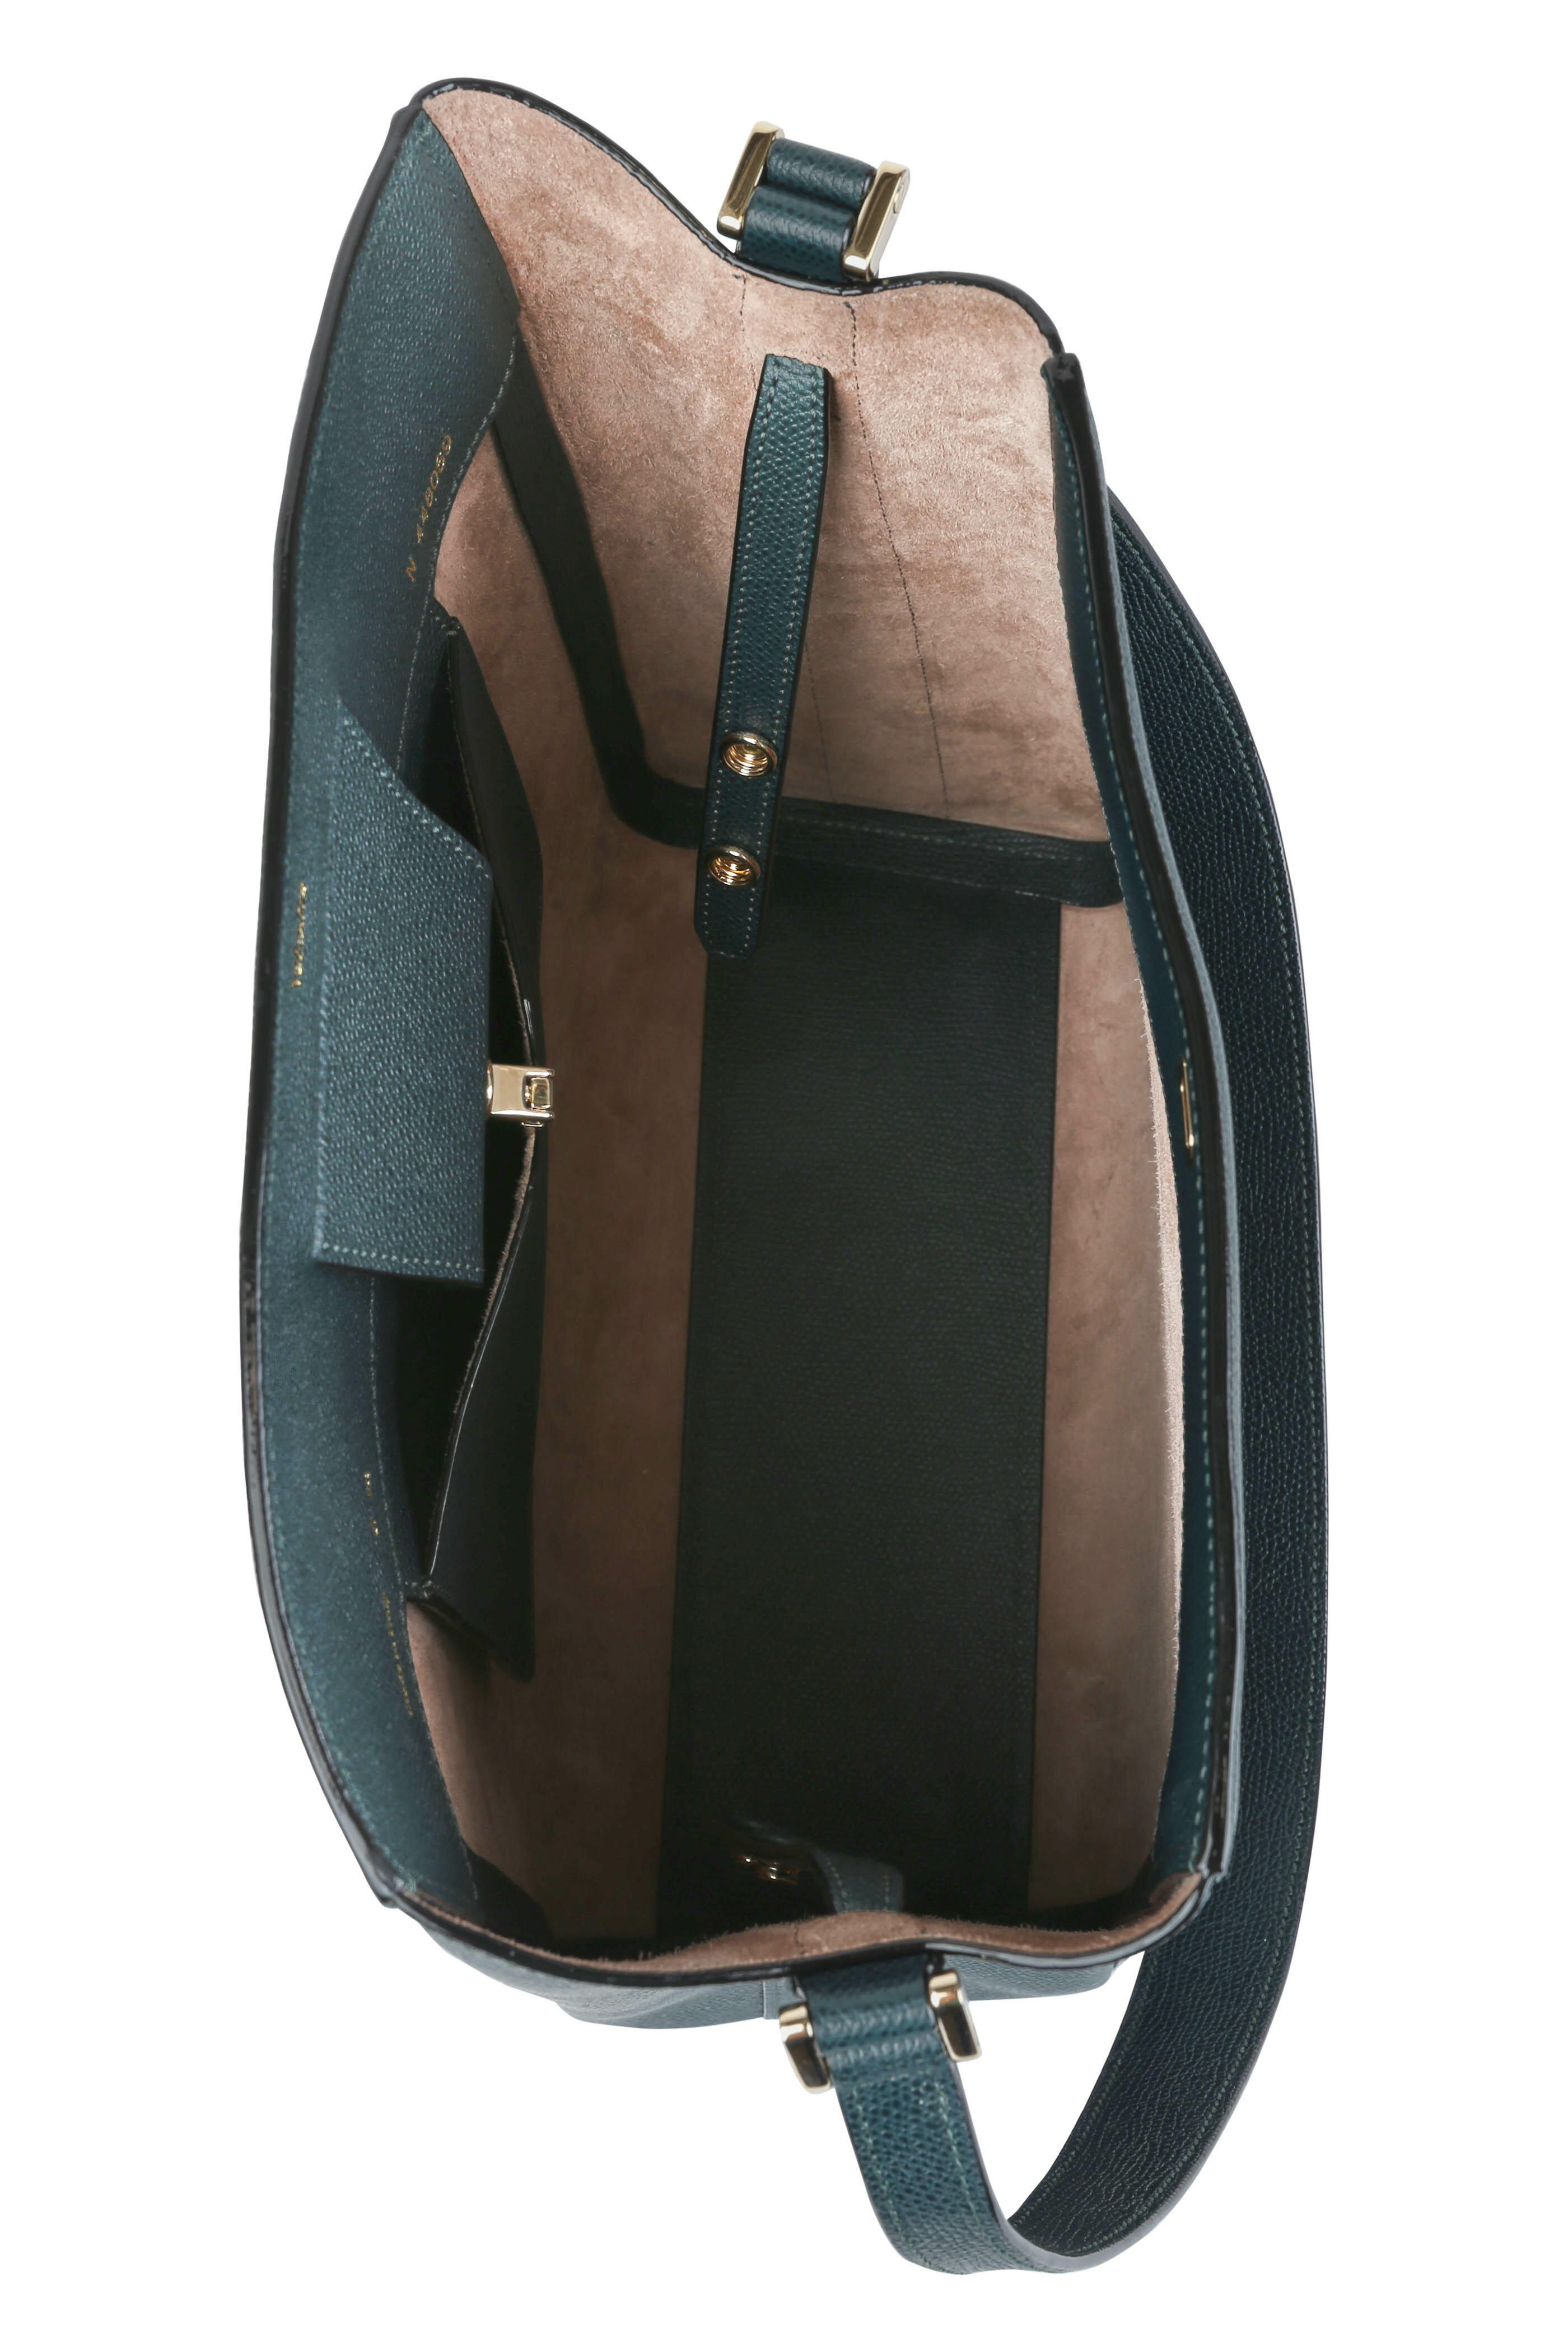 Valextra - Brera leather handbag Light Blue - The Corner